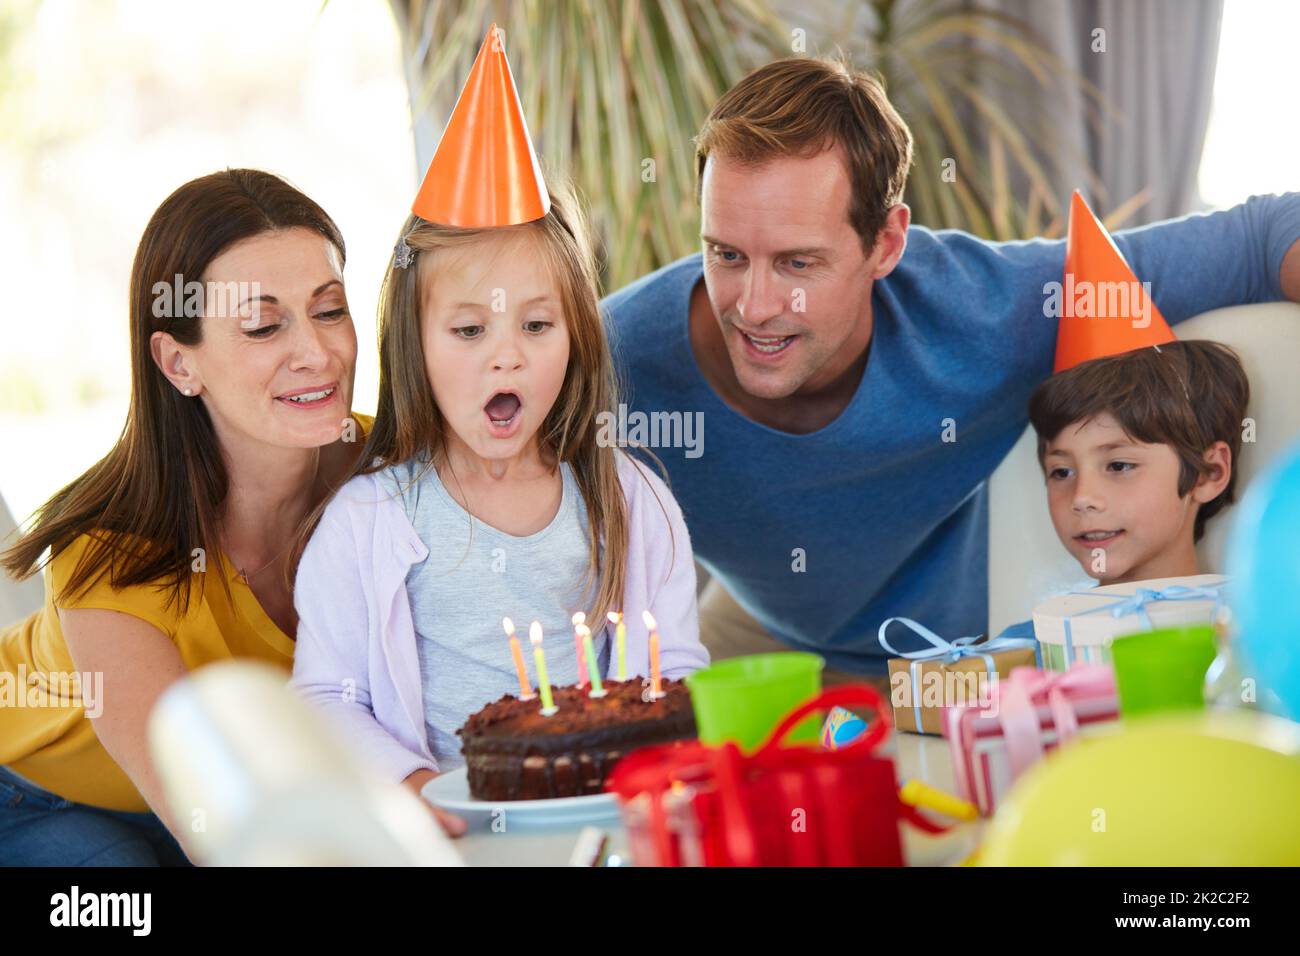 Der Moment, auf den sie alle gewartet haben. Aufnahme eines kleinen Mädchens, das die Kerzen ihres Geburtstagstortes umringt von ihrer Familie ausbläst. Stockfoto